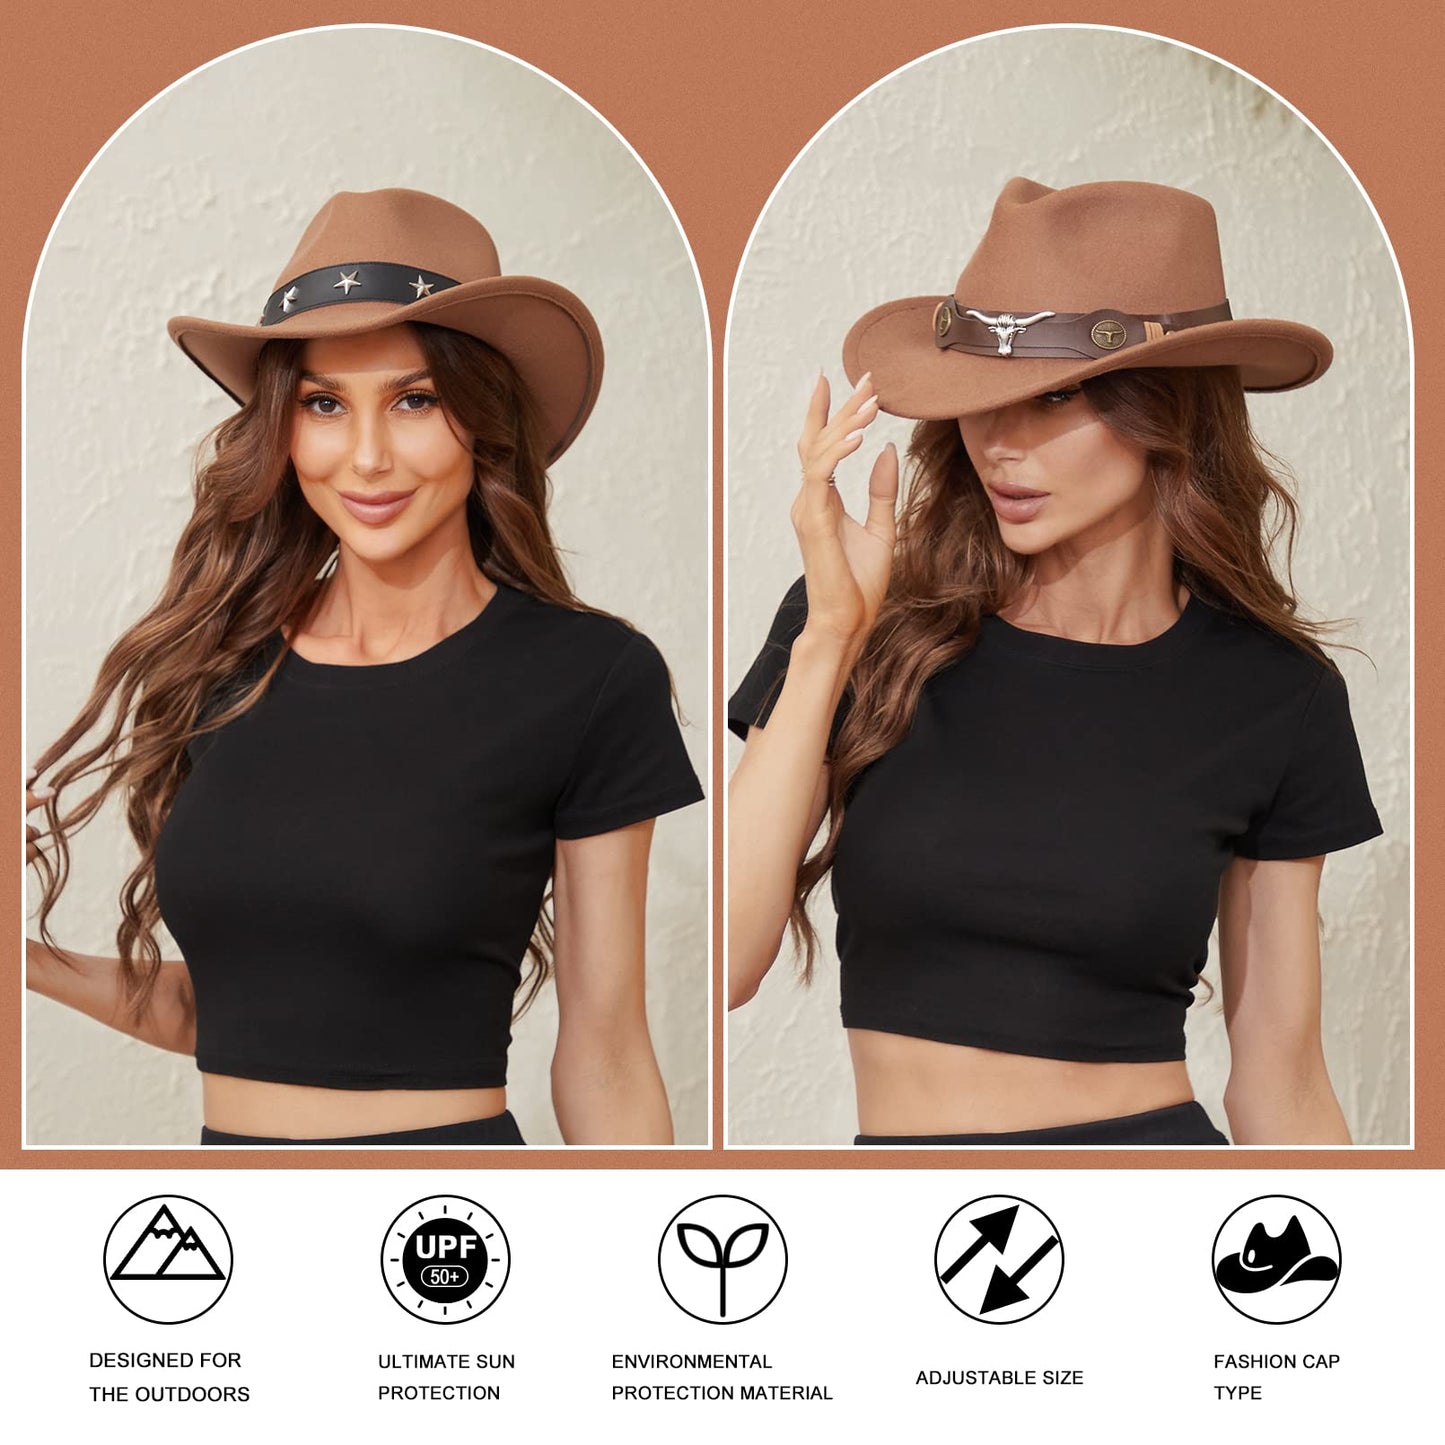 RainFlowwer Cowboy Hat Men, Brown Cowboy Hat for Women, Western Style Hat with Wide Belt Wide Brim